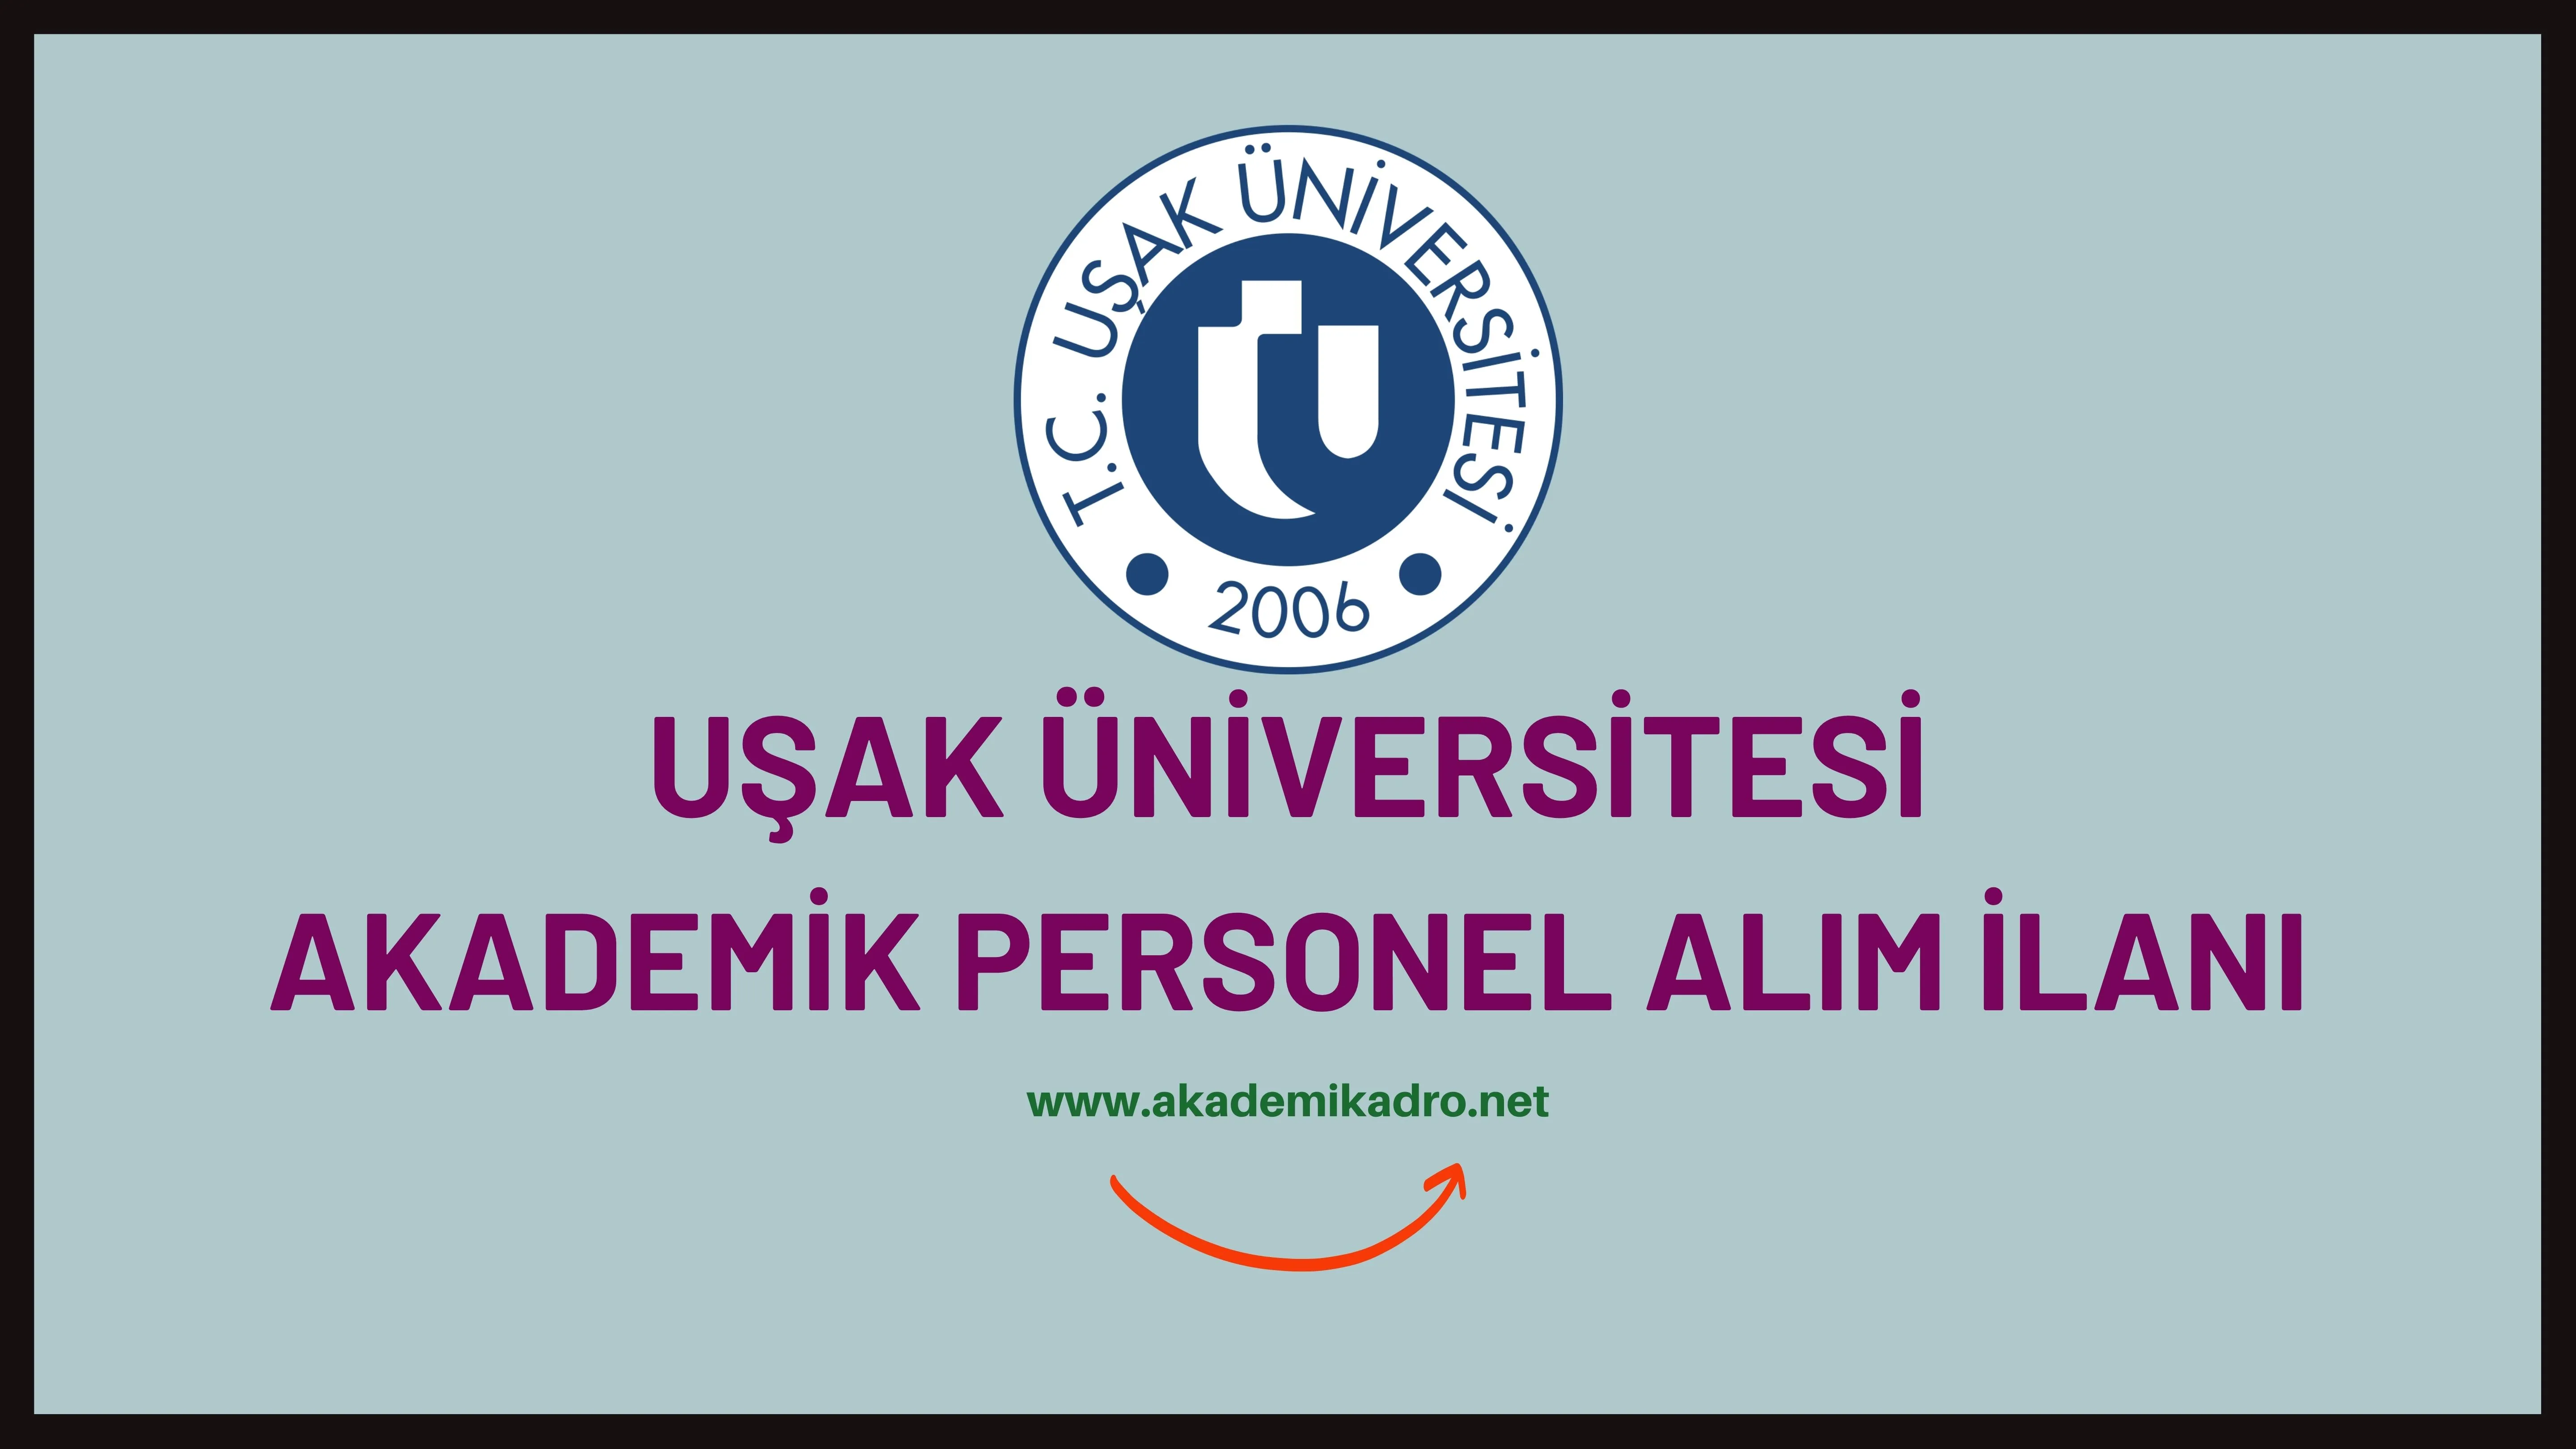 Uşak Üniversitesi birçok alandan 23 Öğretim üyesi alacak. Son başvuru tarihi 09 Haziran 2023.